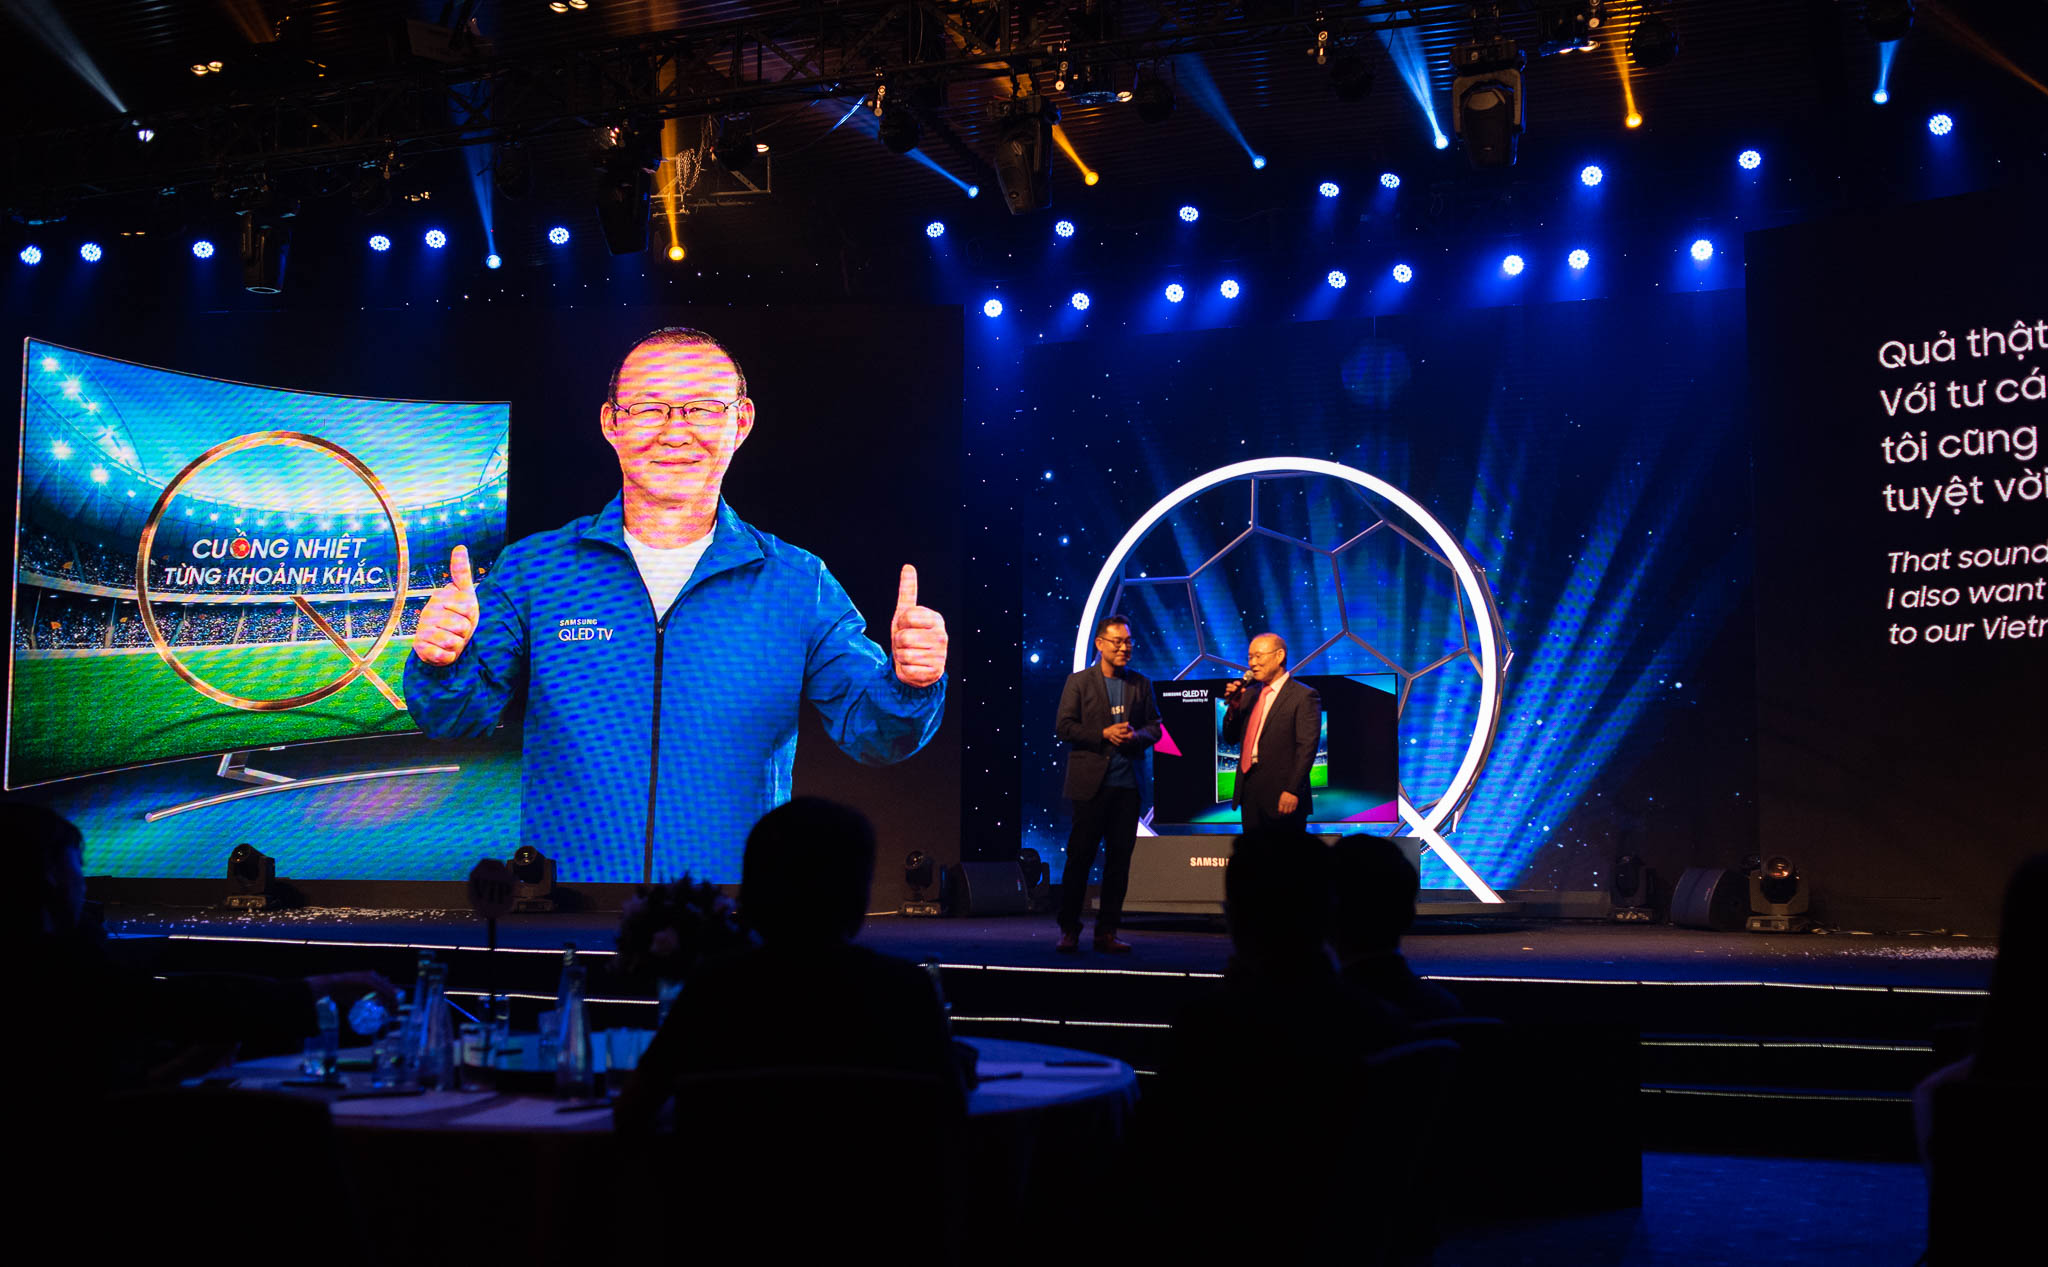 Samsung giới thiệu các TV QLED 2018 ở Việt Nam, cho khách hàng ở nhà được thiết kế theo các bộ phim